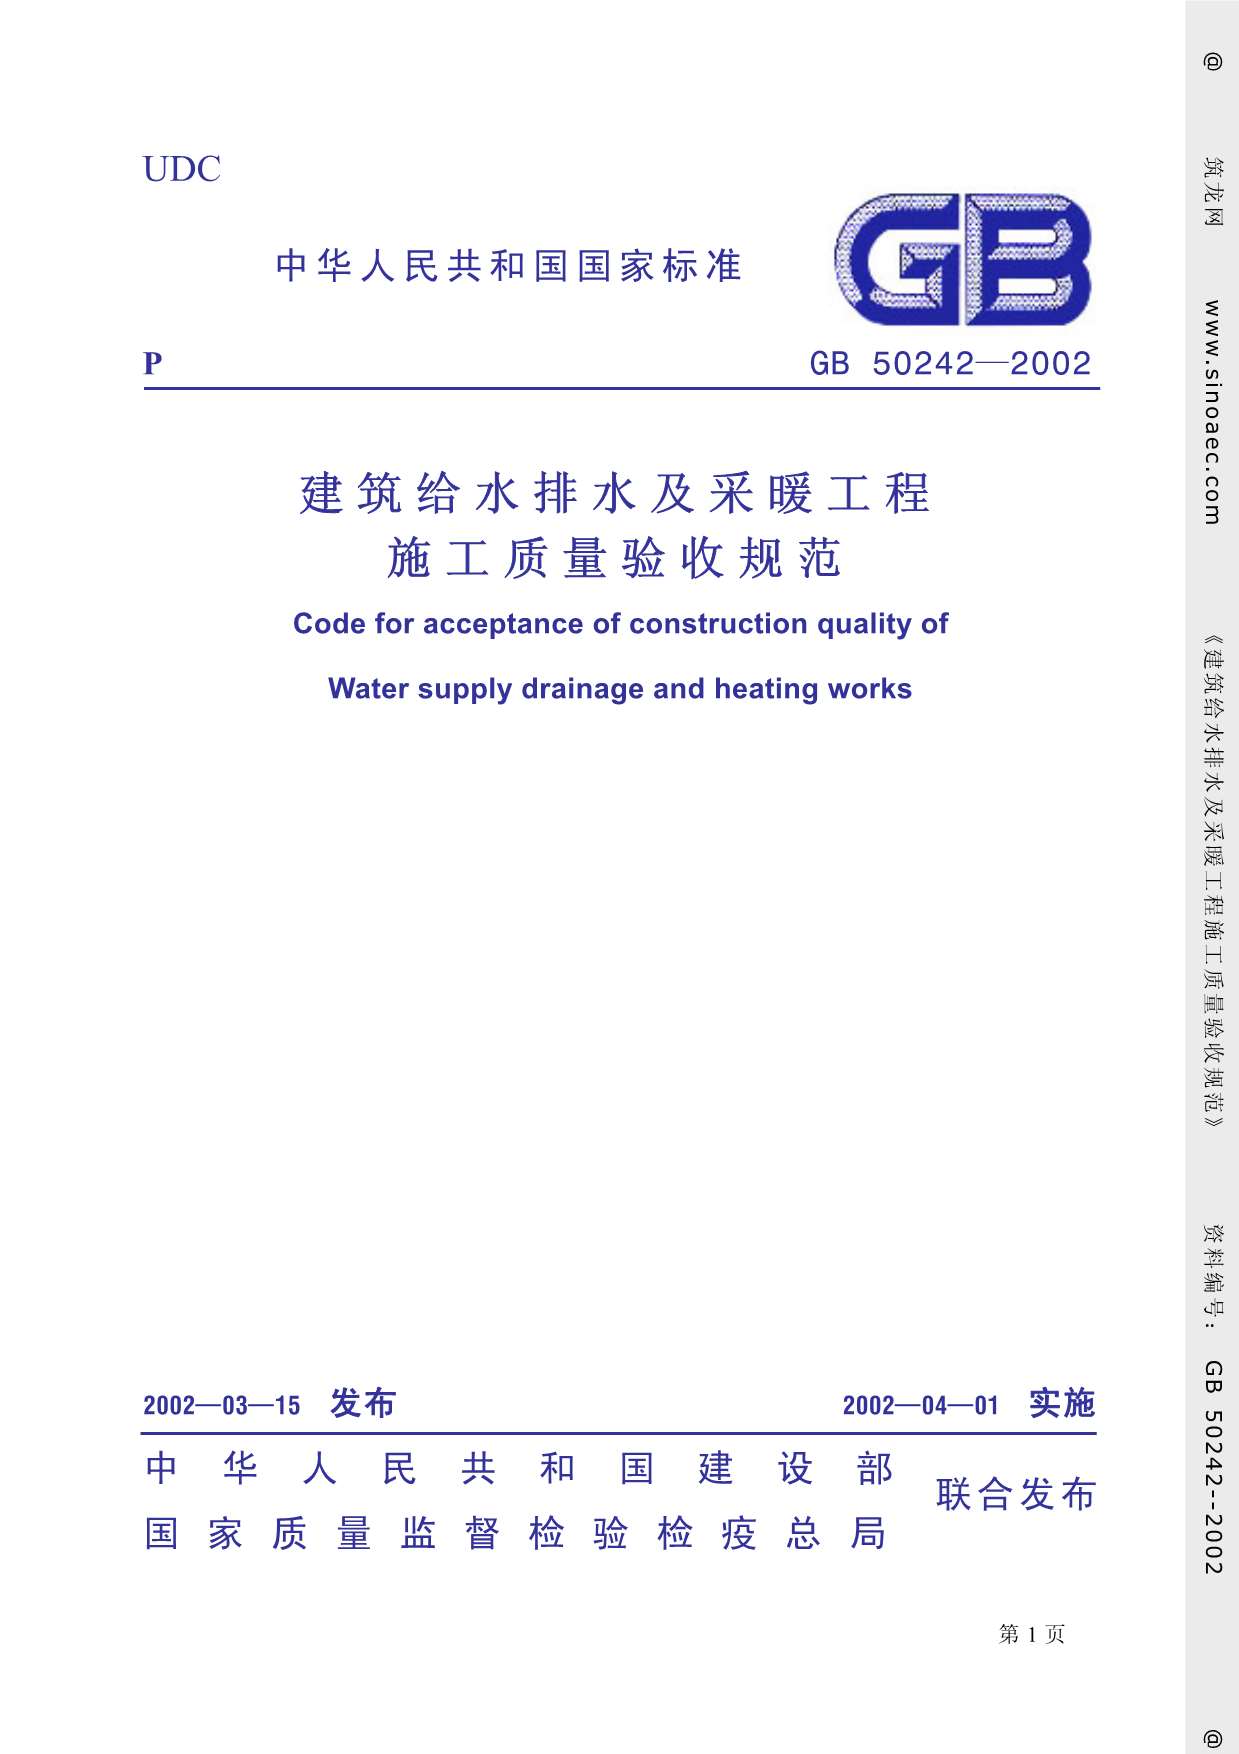 GB50242-2002《建筑给排水及采暖工程质量验收规范》